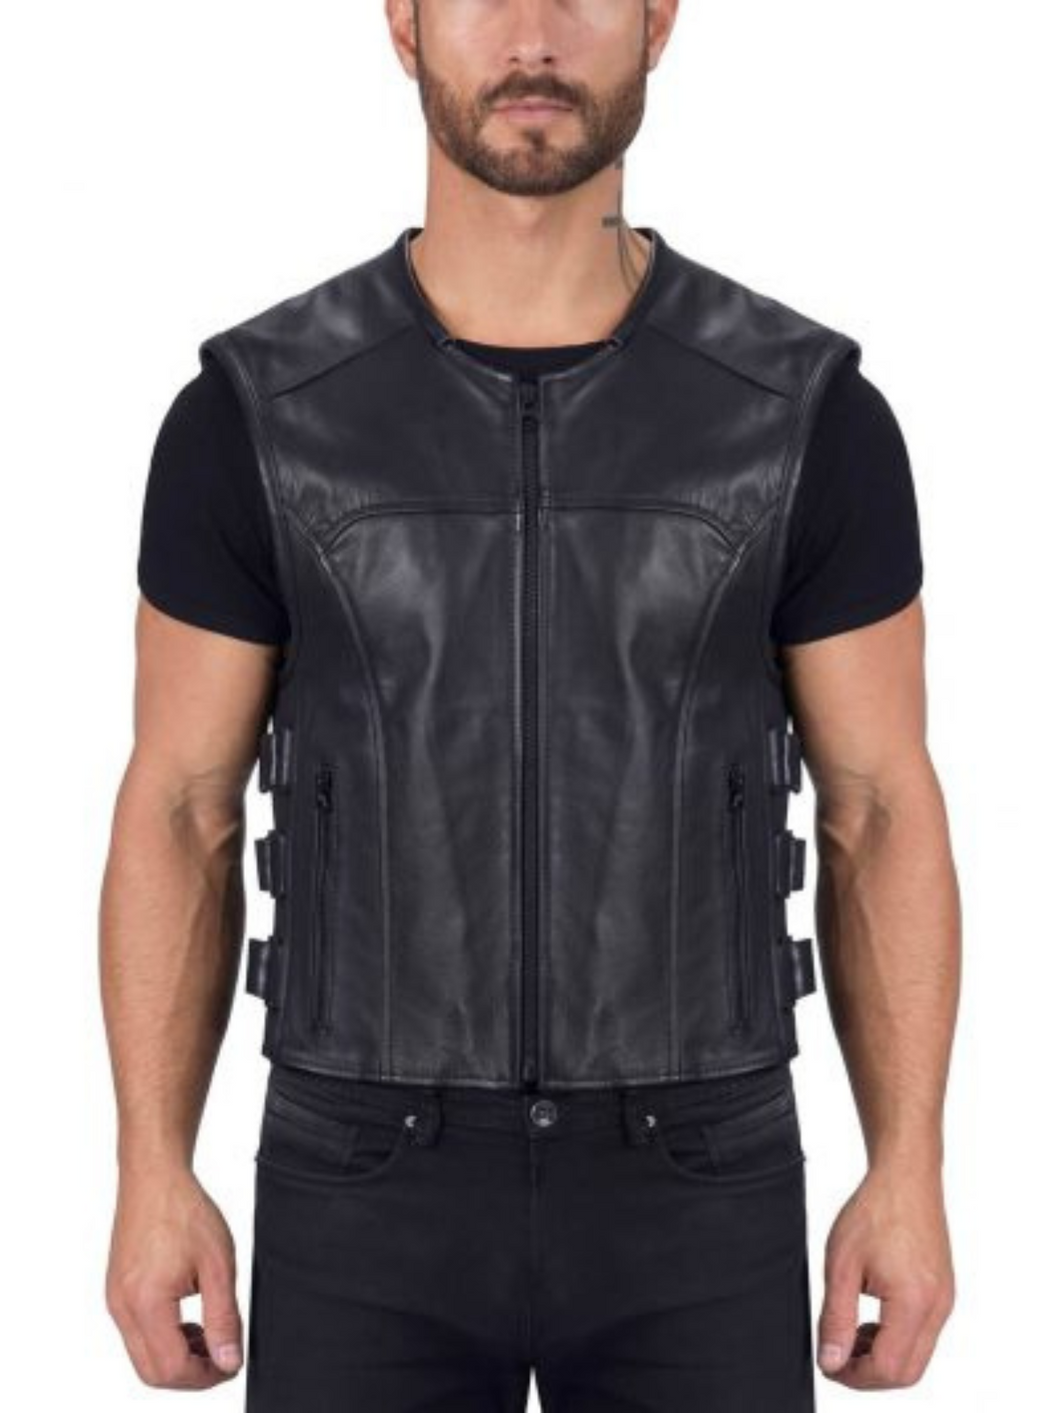 Real Leather Black Vest For Mens